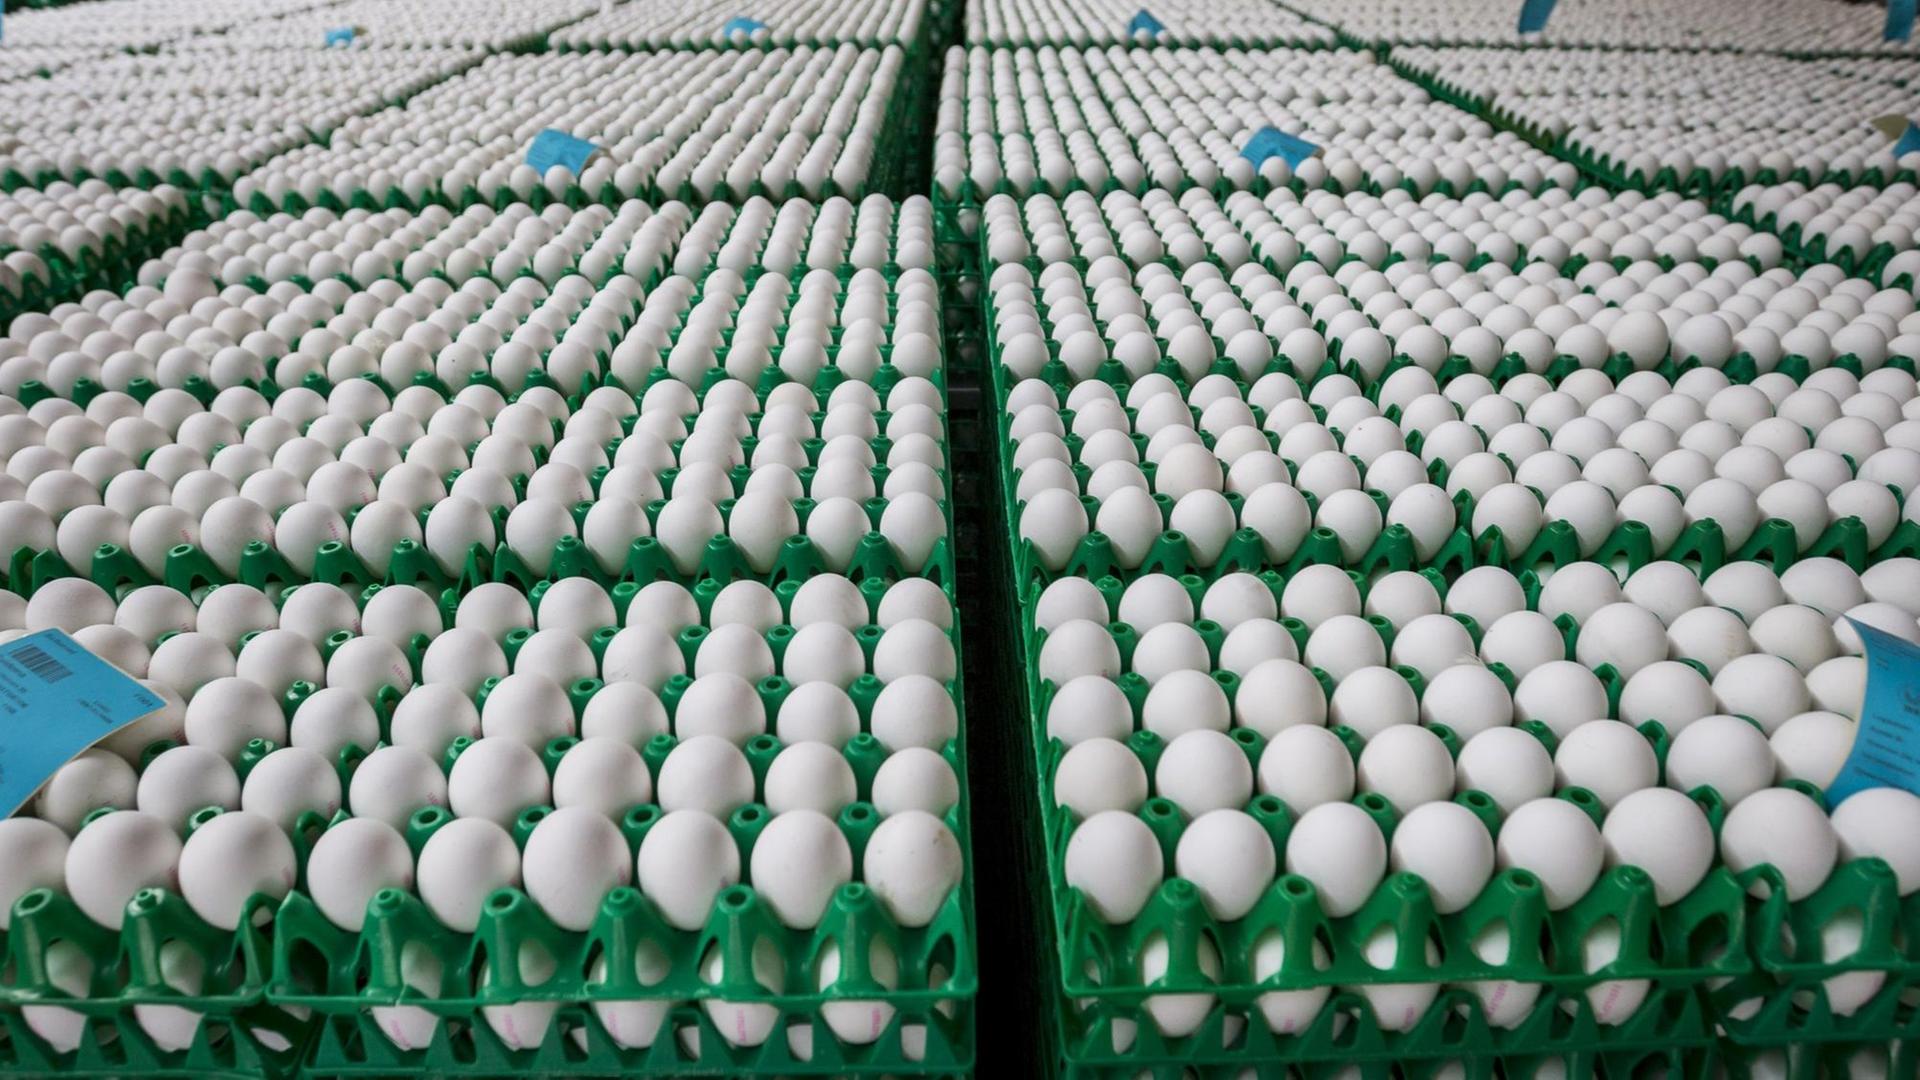  Im Auftrag der niederländischen Lebensmittelkontrollbehörde NVWA werden am 02.08.2017 rund eine Million Eier aus einer Geflügelfarm in Onstwedde (Niederlande) zerstört, weil sie mit dem Insektizid Fipronil verseucht sind.